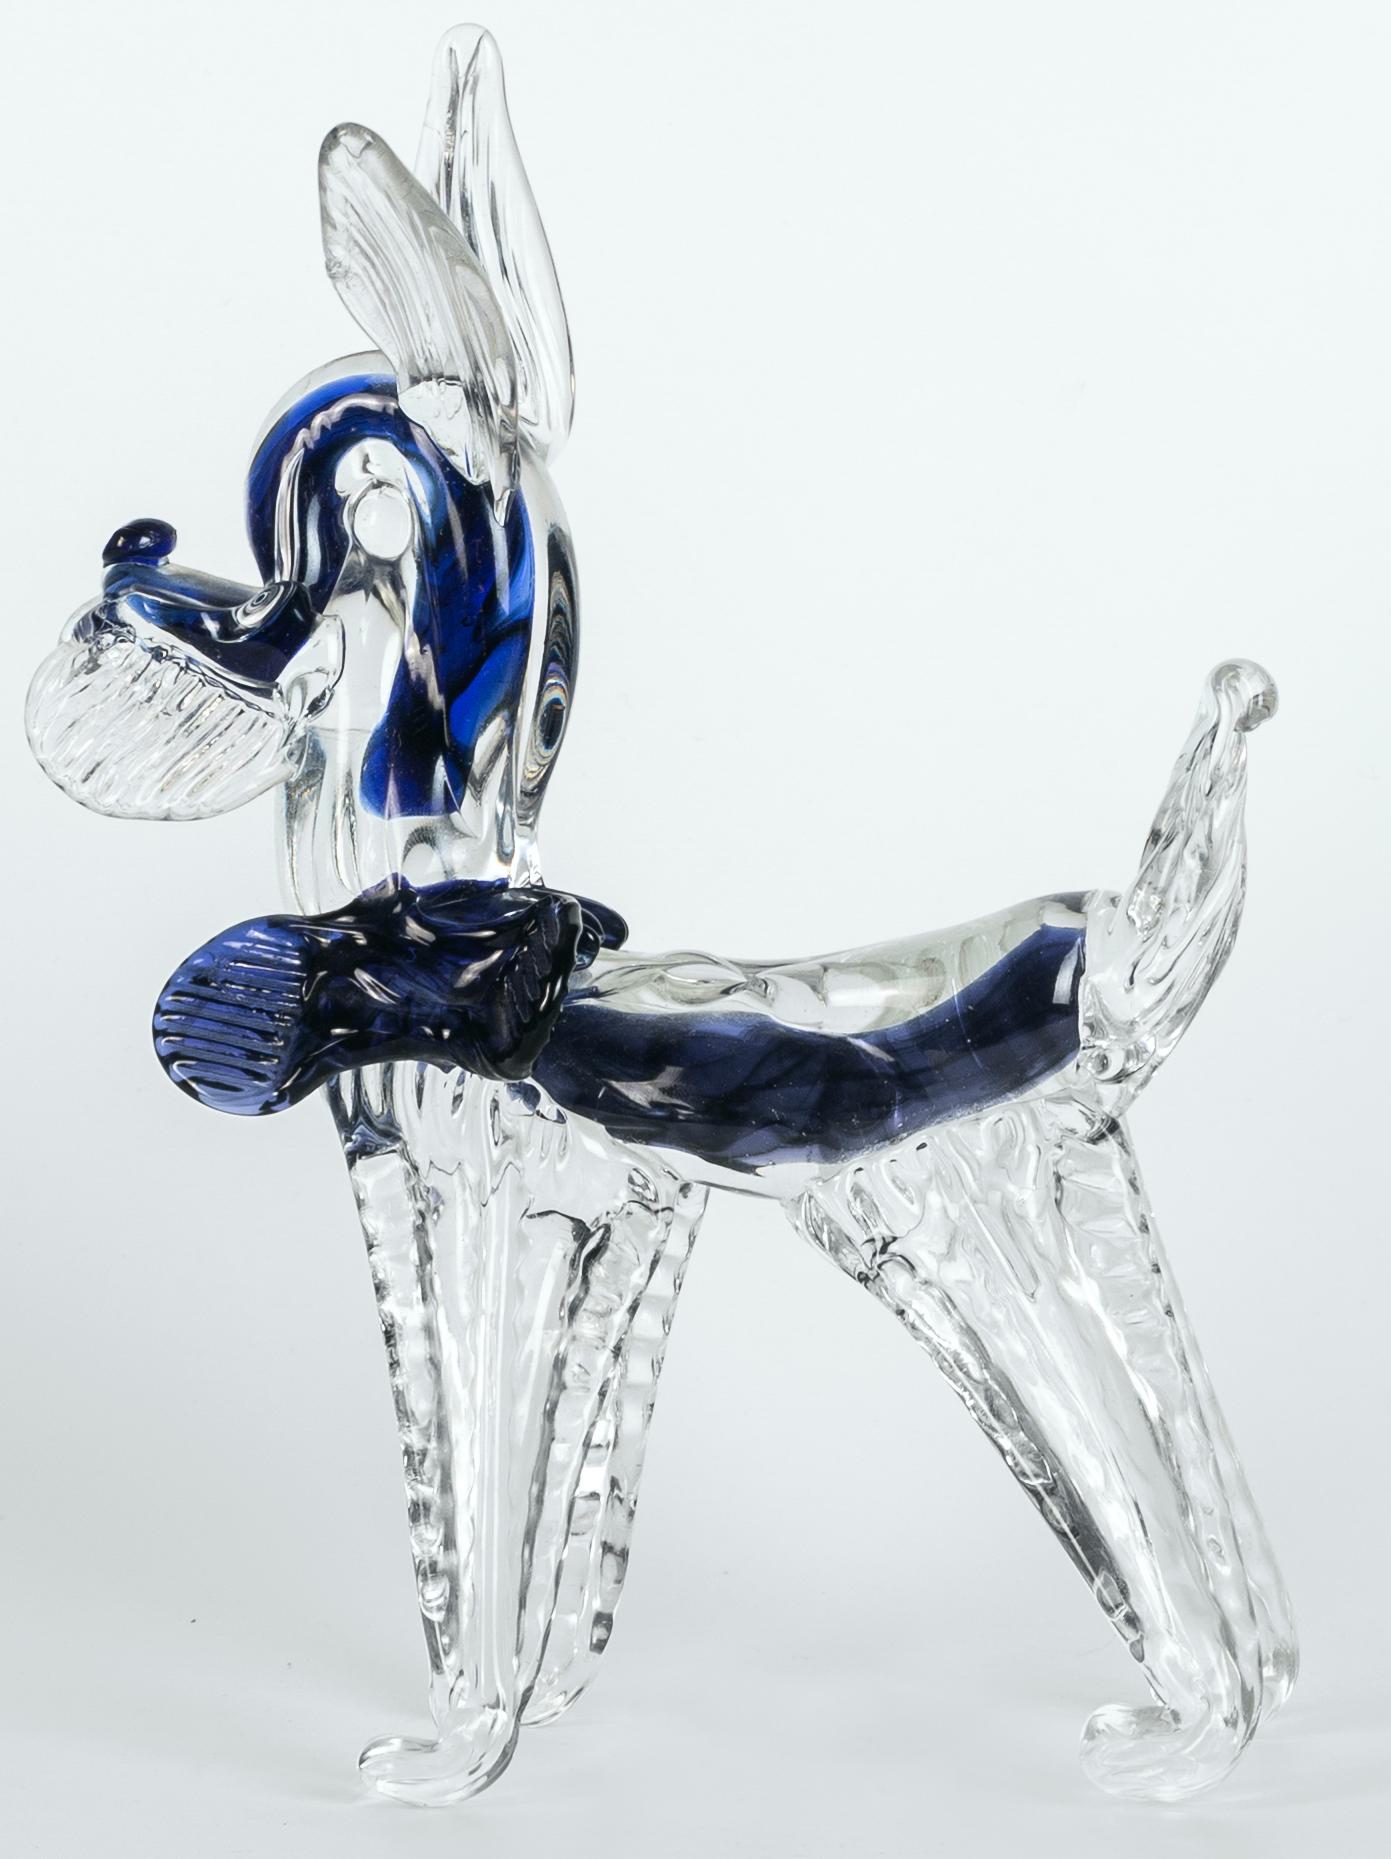 Le chien en verre de Murano est un bel objet décoratif en verre, réalisé par la manufacture de Murano dans les années 1980. 

Cet objet appartient à la collection exclusive et sympathique d'animaux en verre de Murano, fabriqués selon la technique